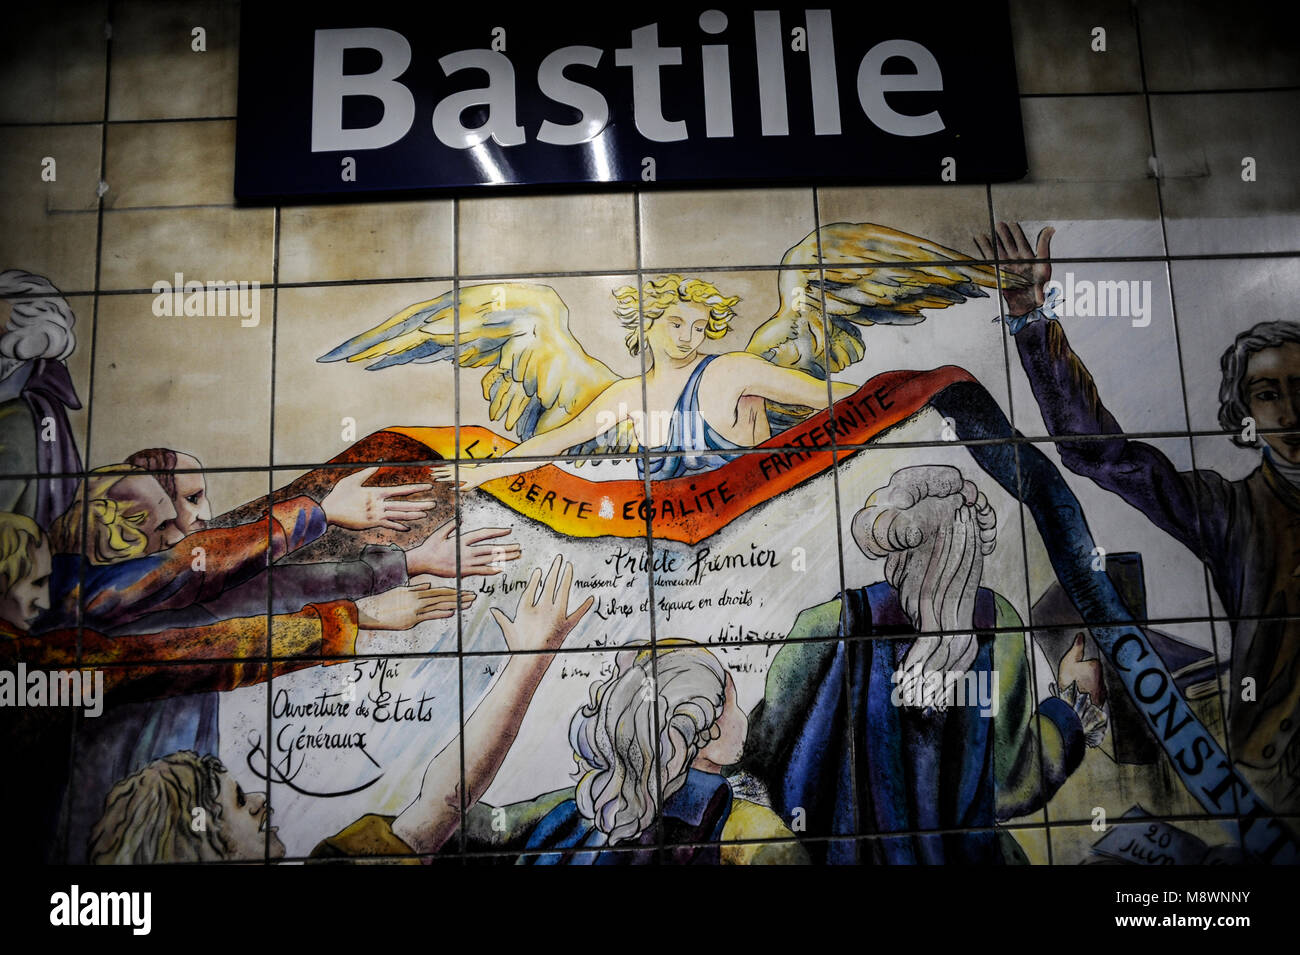 Pariser Metro-U-Bahnhof Bastille - GESCHICHTE ABBILDUNG IN DER METRO STATION - PARIS METRO SIGN-METRO BASTILLE WANDMALEREI © Frédéric BEAUMONT Stockfoto